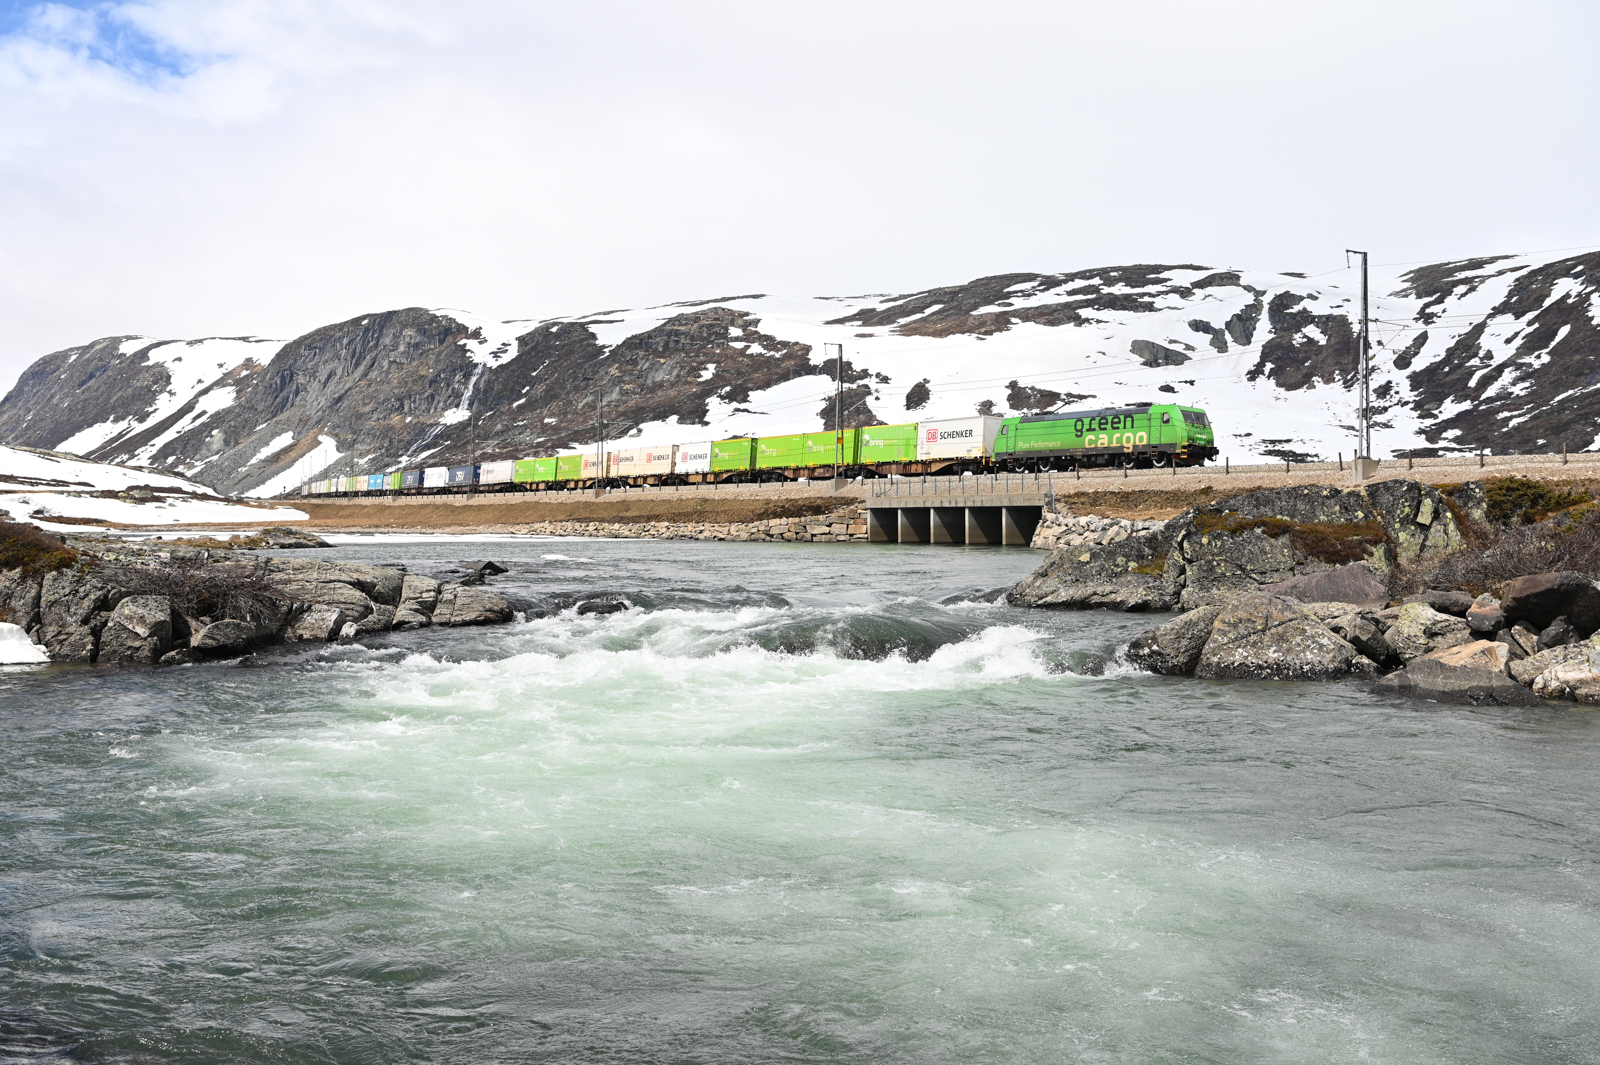 Dem Güterzug von CargoNet folgt mit rund einer Stunde Abstand der Zug 4842 von Green Cargo. Auch er ist von Bergen nach Oslo unterwegs. Hier am 03.06.2022 zwischen Finse und Haugastøl.